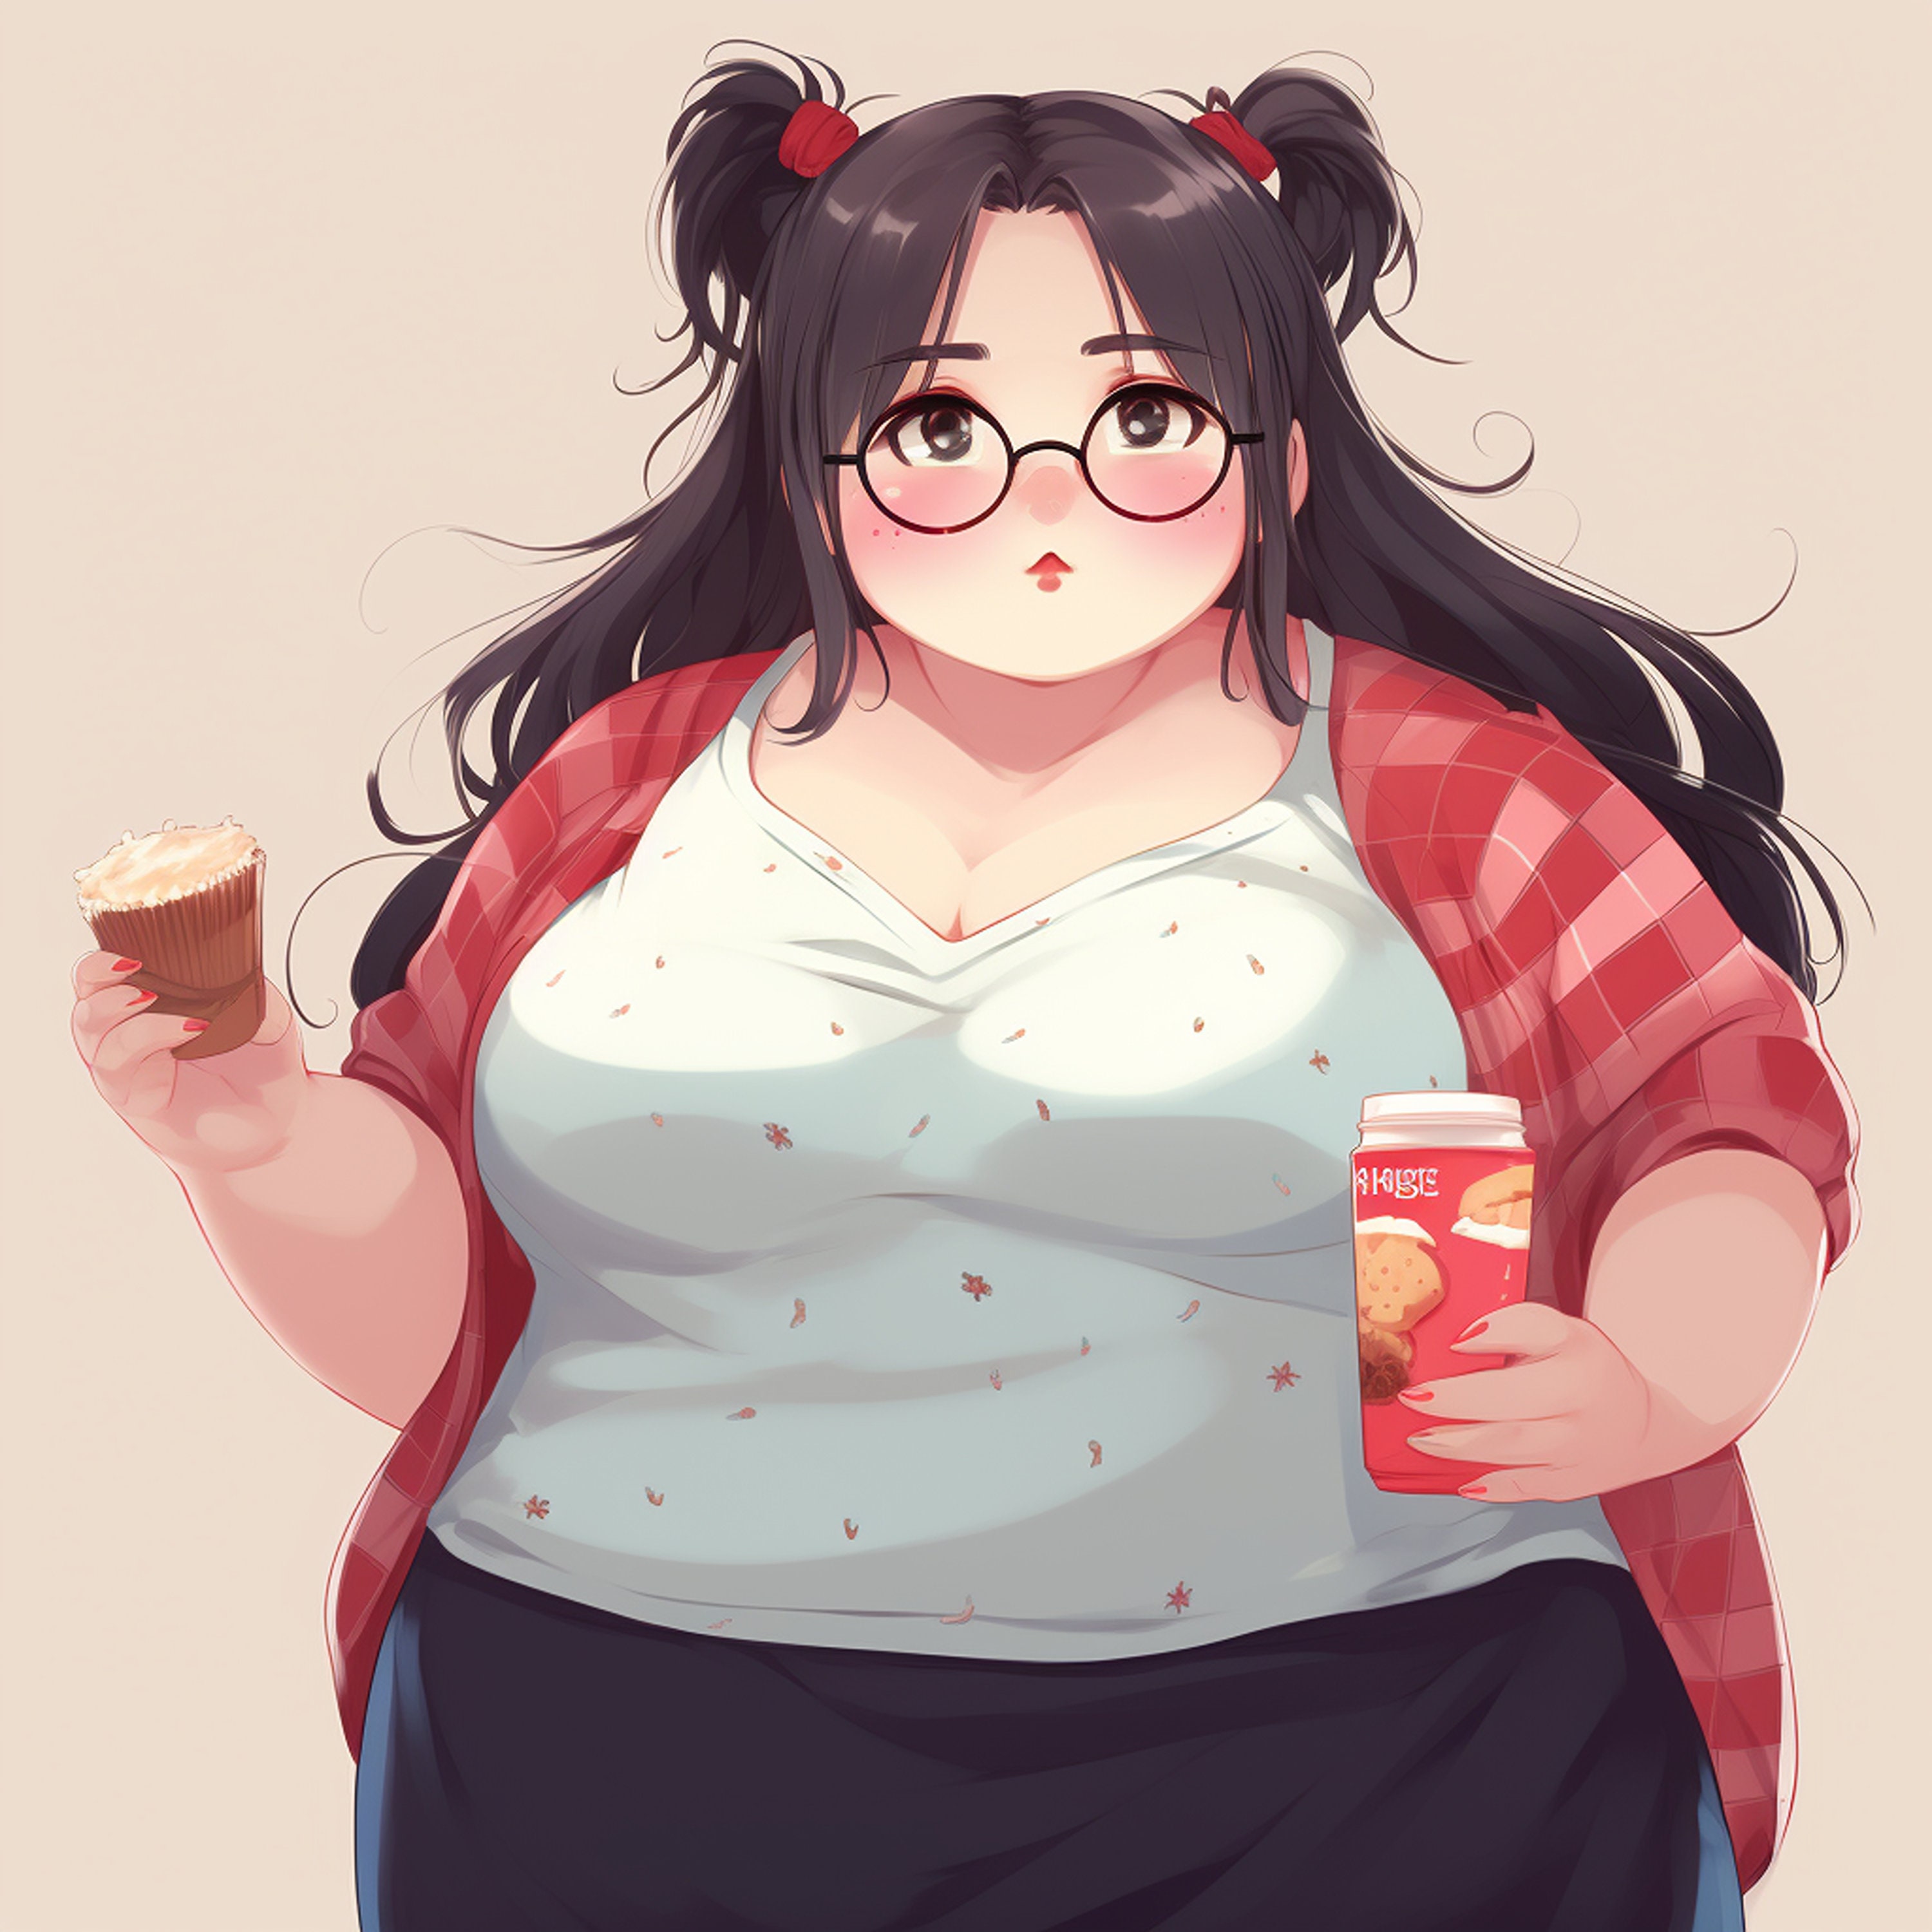 Chubby anime girl